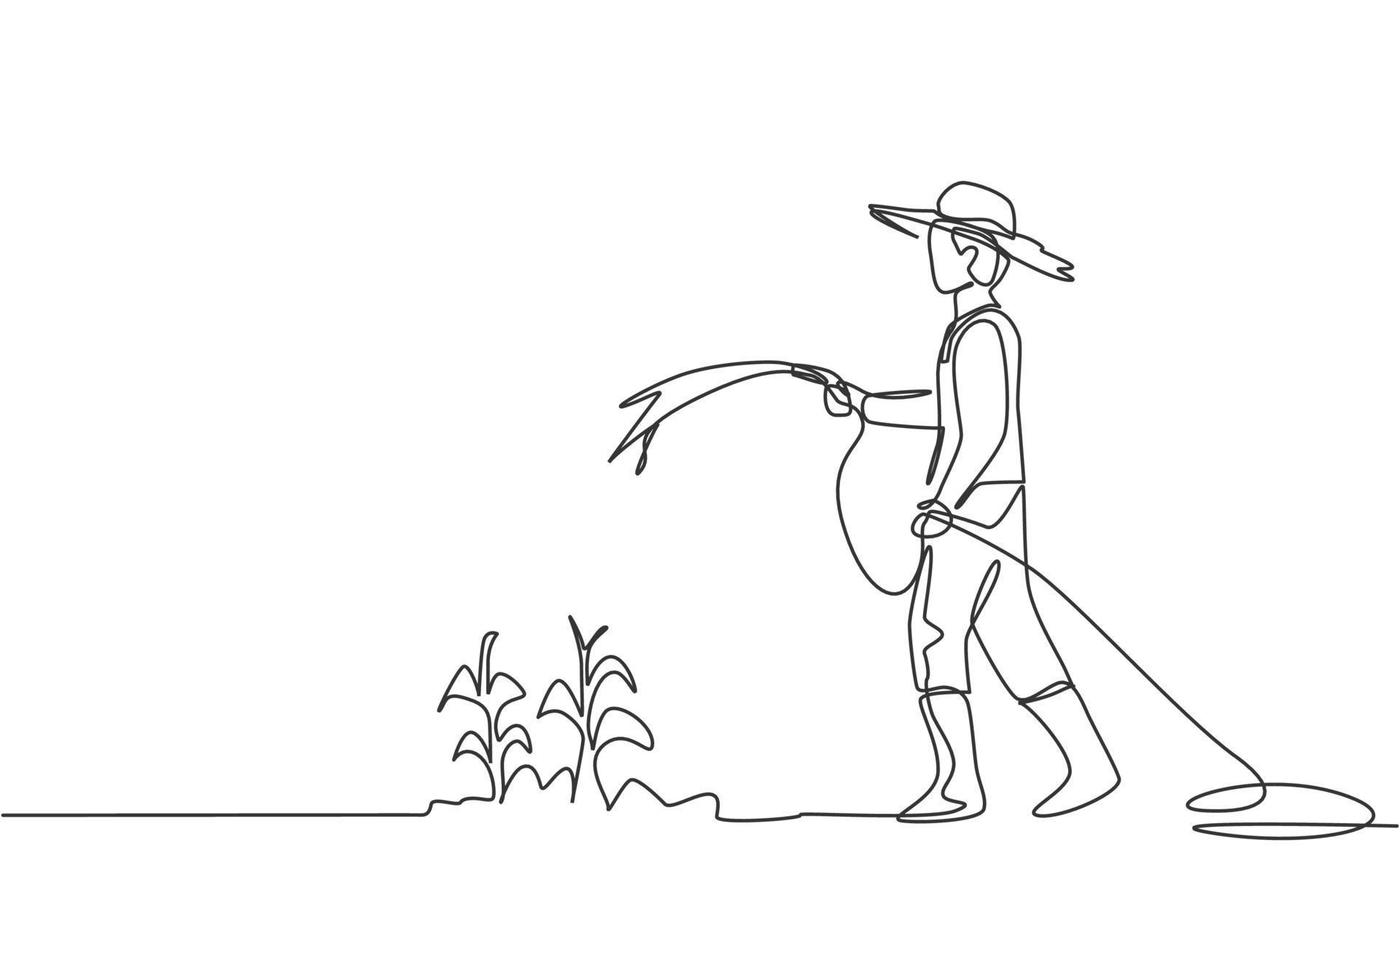 única linha contínua desenho jovem agricultor em pé no campo agrícola enquanto rega as plantas usando uma mangueira. conceito de atividades de plantio do agricultor. uma linha desenhar ilustração em vetor design gráfico.